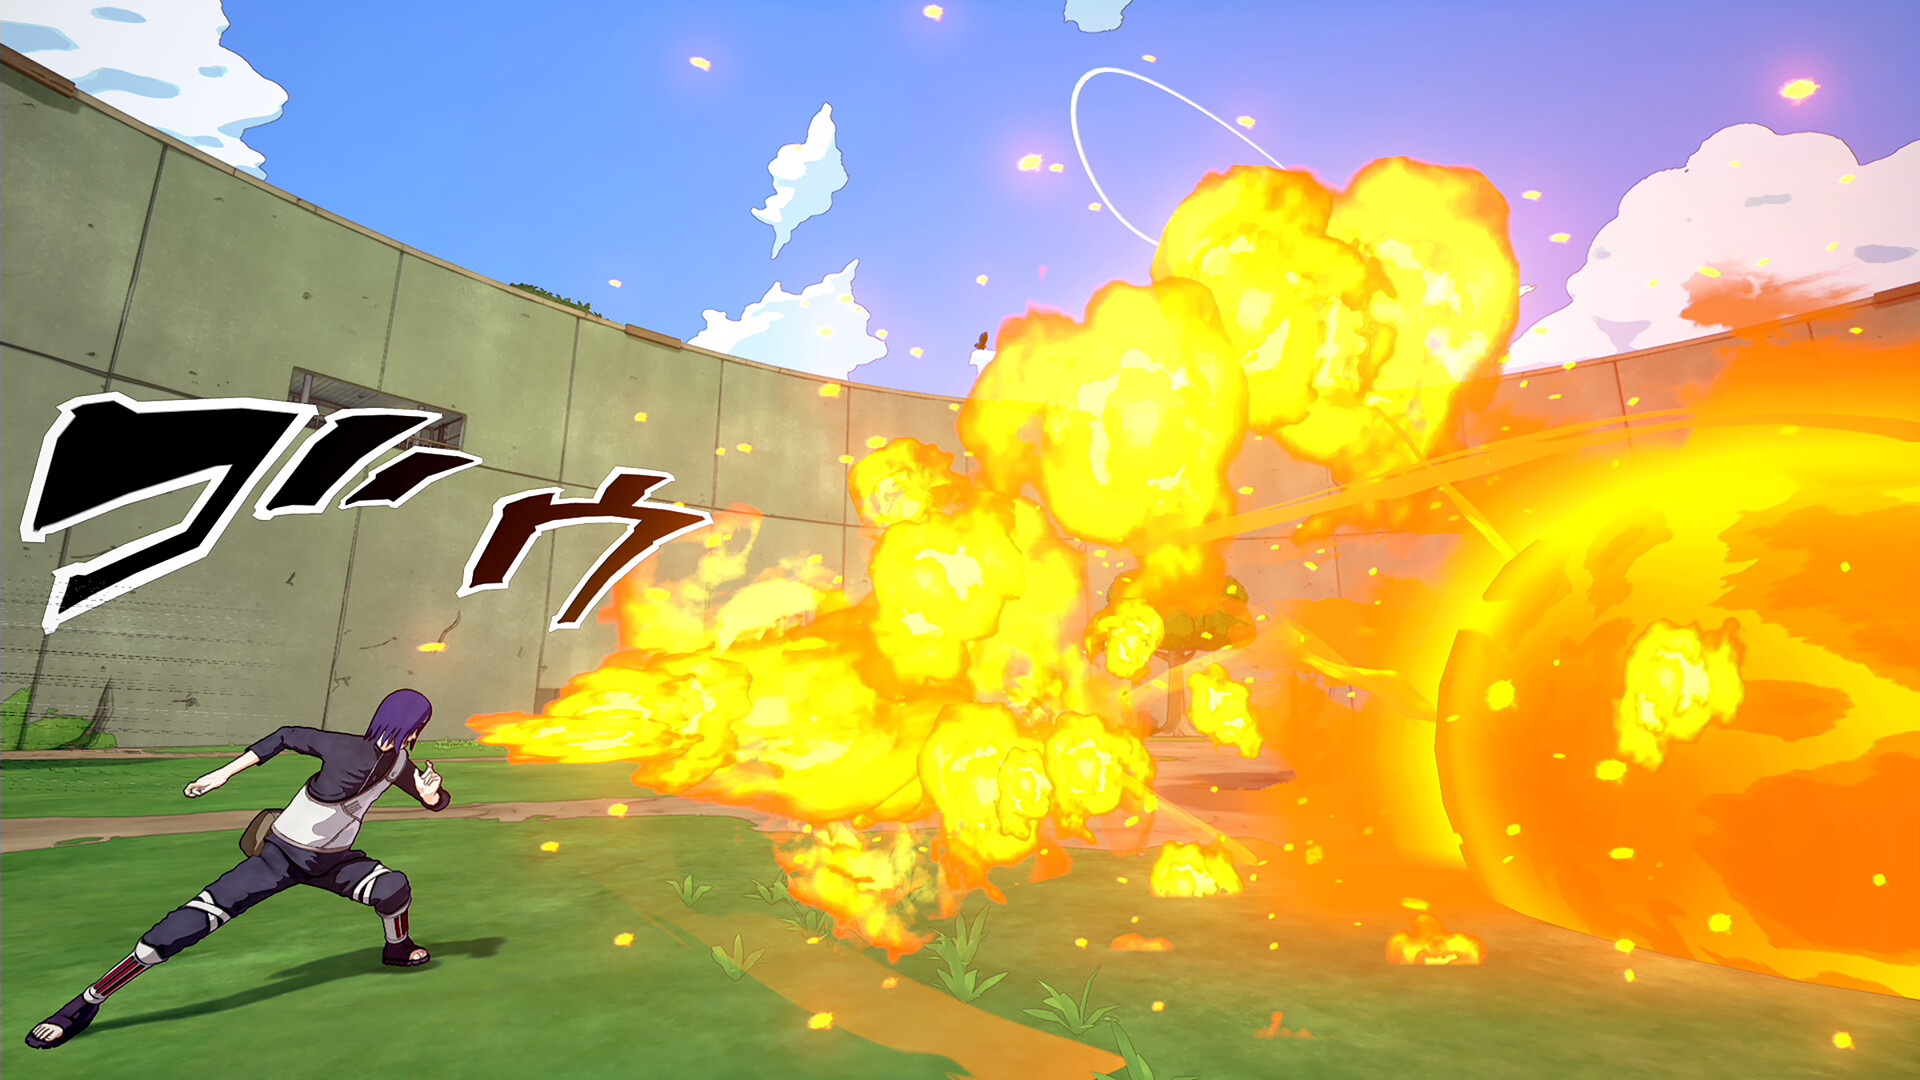 NARUTO TO BORUTO: SHINOBI STRIKER on Steam